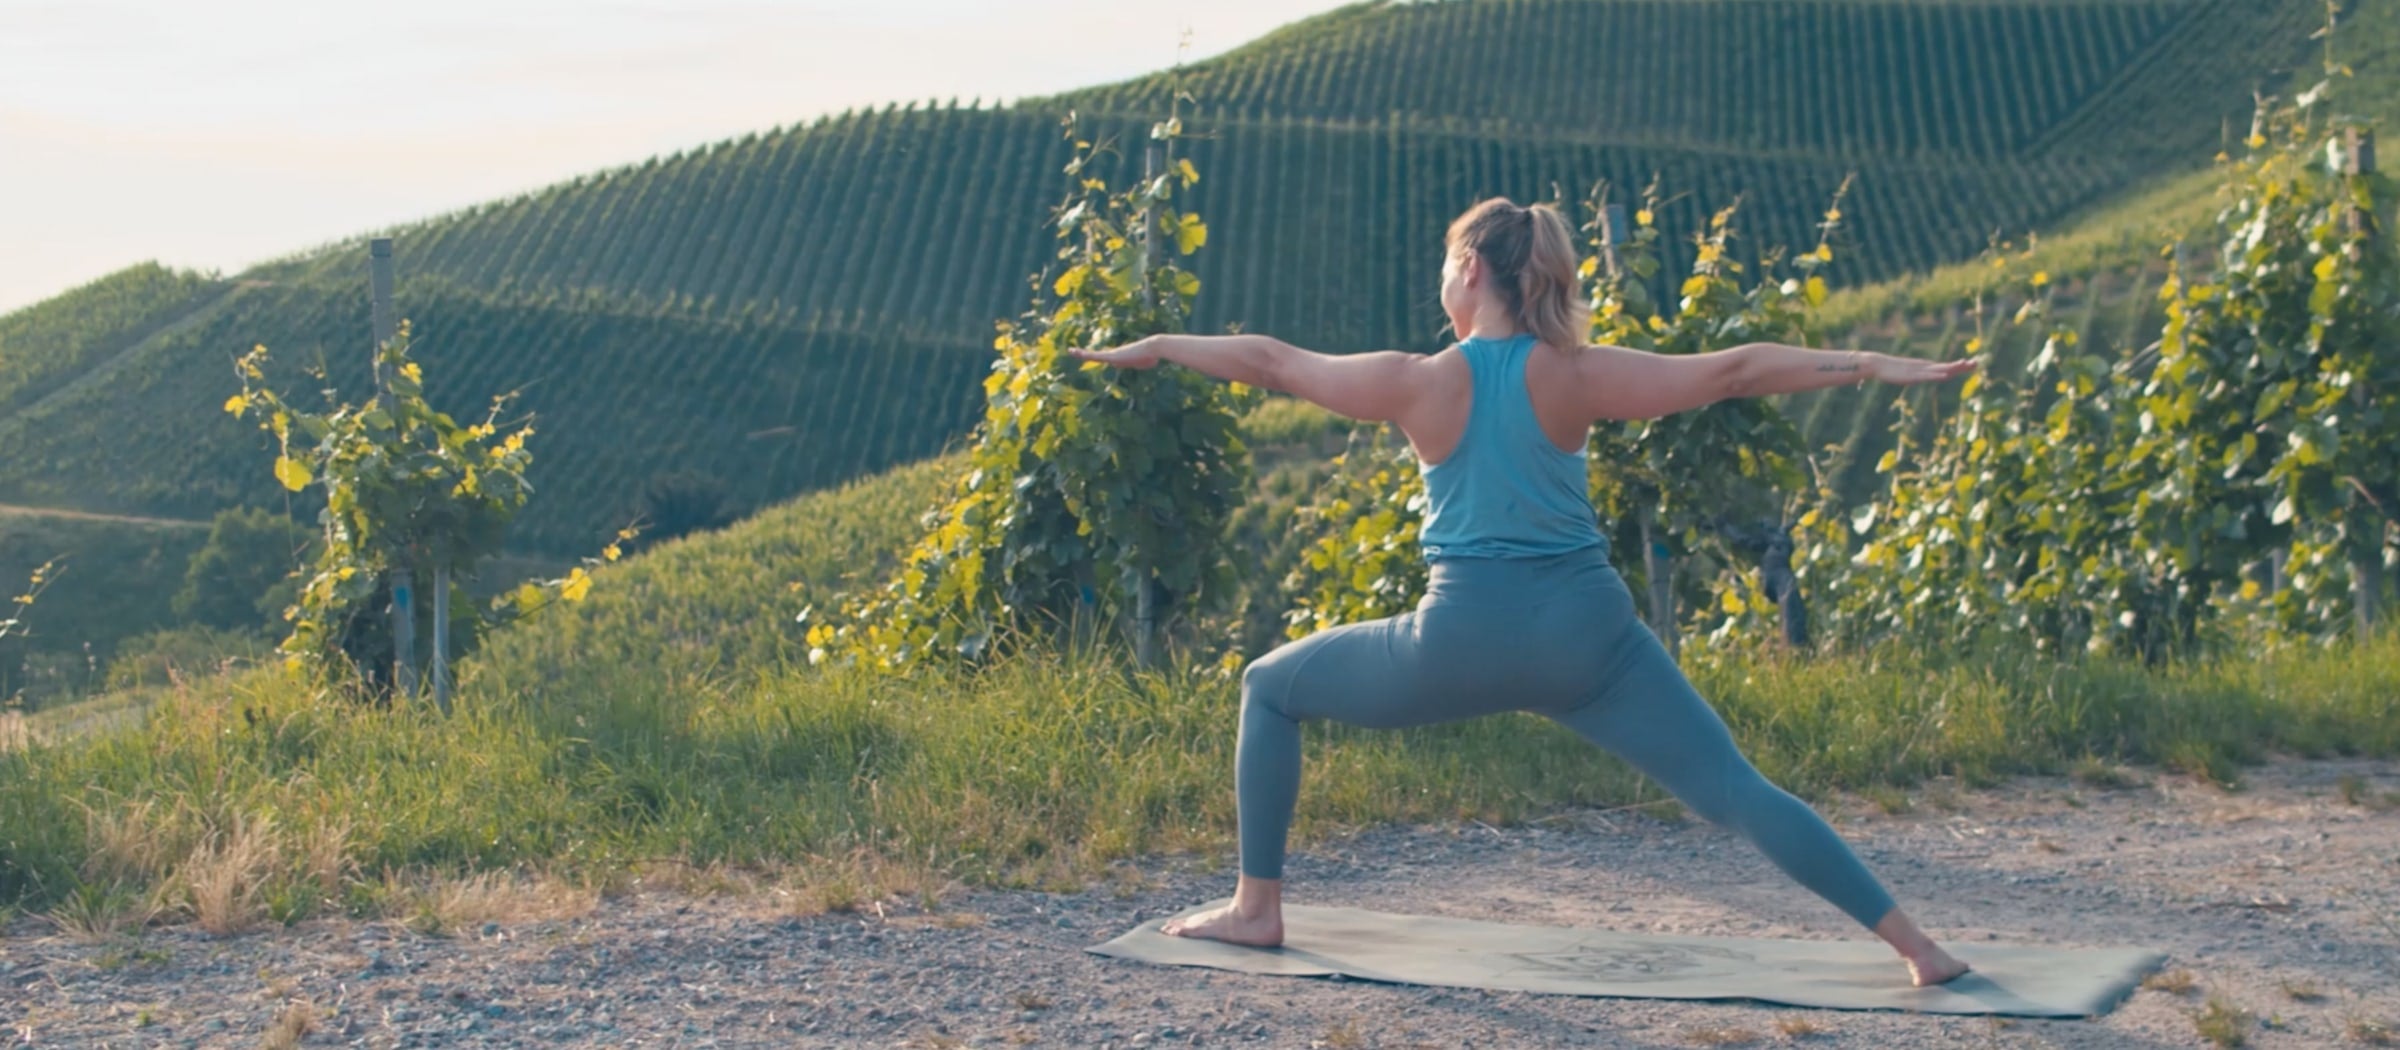 Frau zeigt Yogaübungen in den Weinbergen.